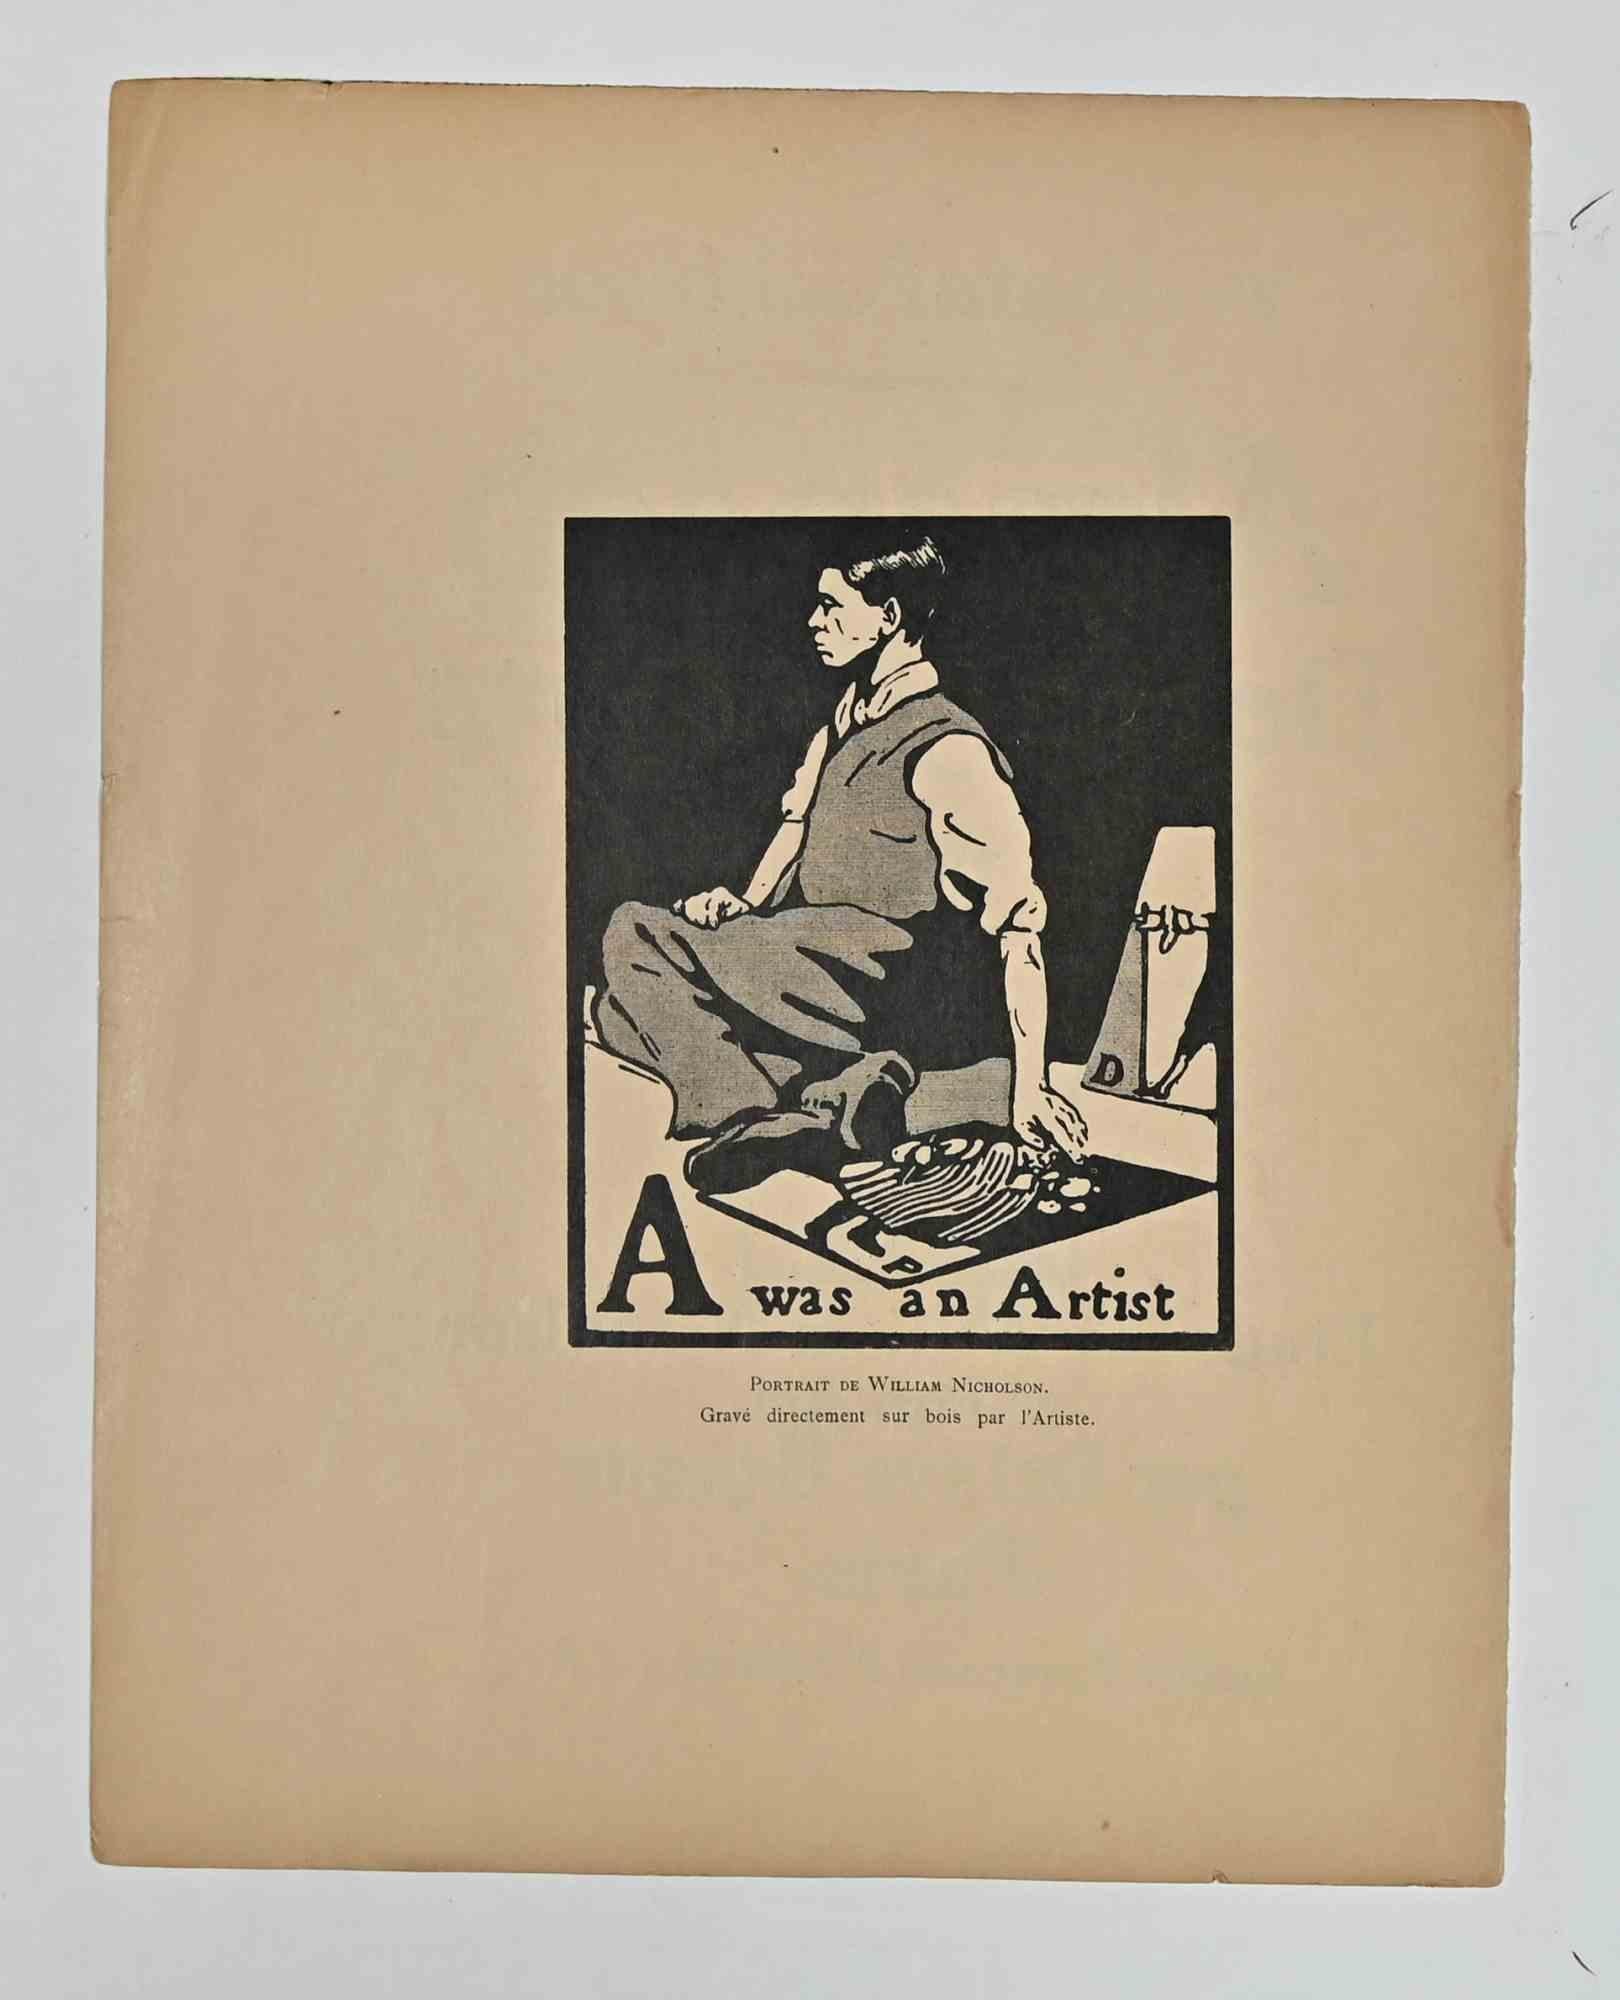 A was an Artist ist ein Holzstich des Künstlers William Nicholson aus dem Jahr 1898

Mit dem Titel " A was an Artist - Portrait de William Nicholson " unten in der Mitte des Bildes. Die Rückseite gehört zu der Serie "Almanach". De douze sports",